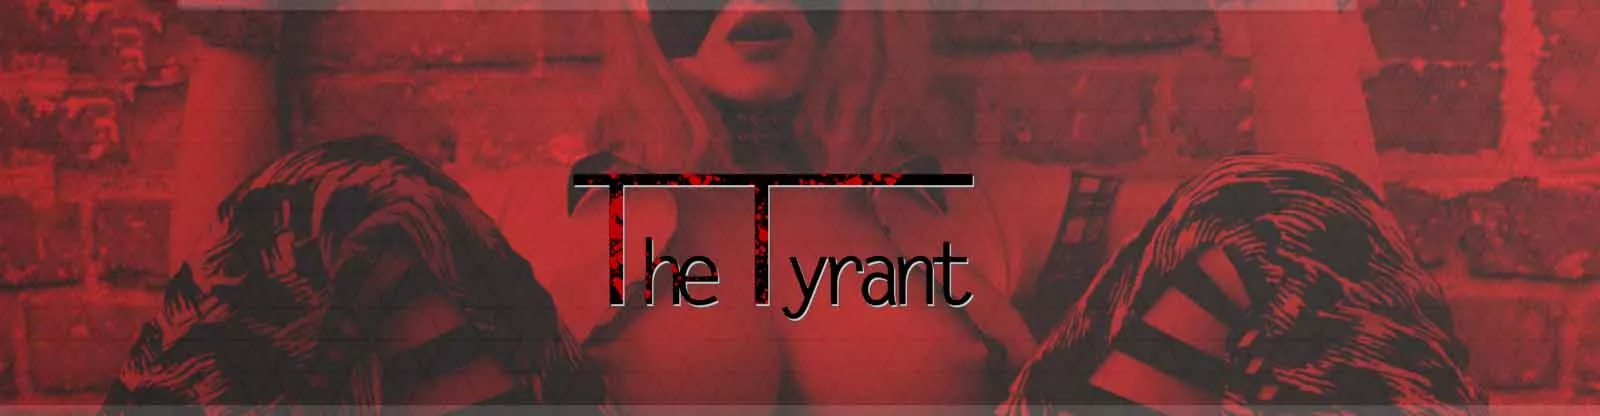 3D seksualna igra Tyrant, porno igra, igra za odrasle